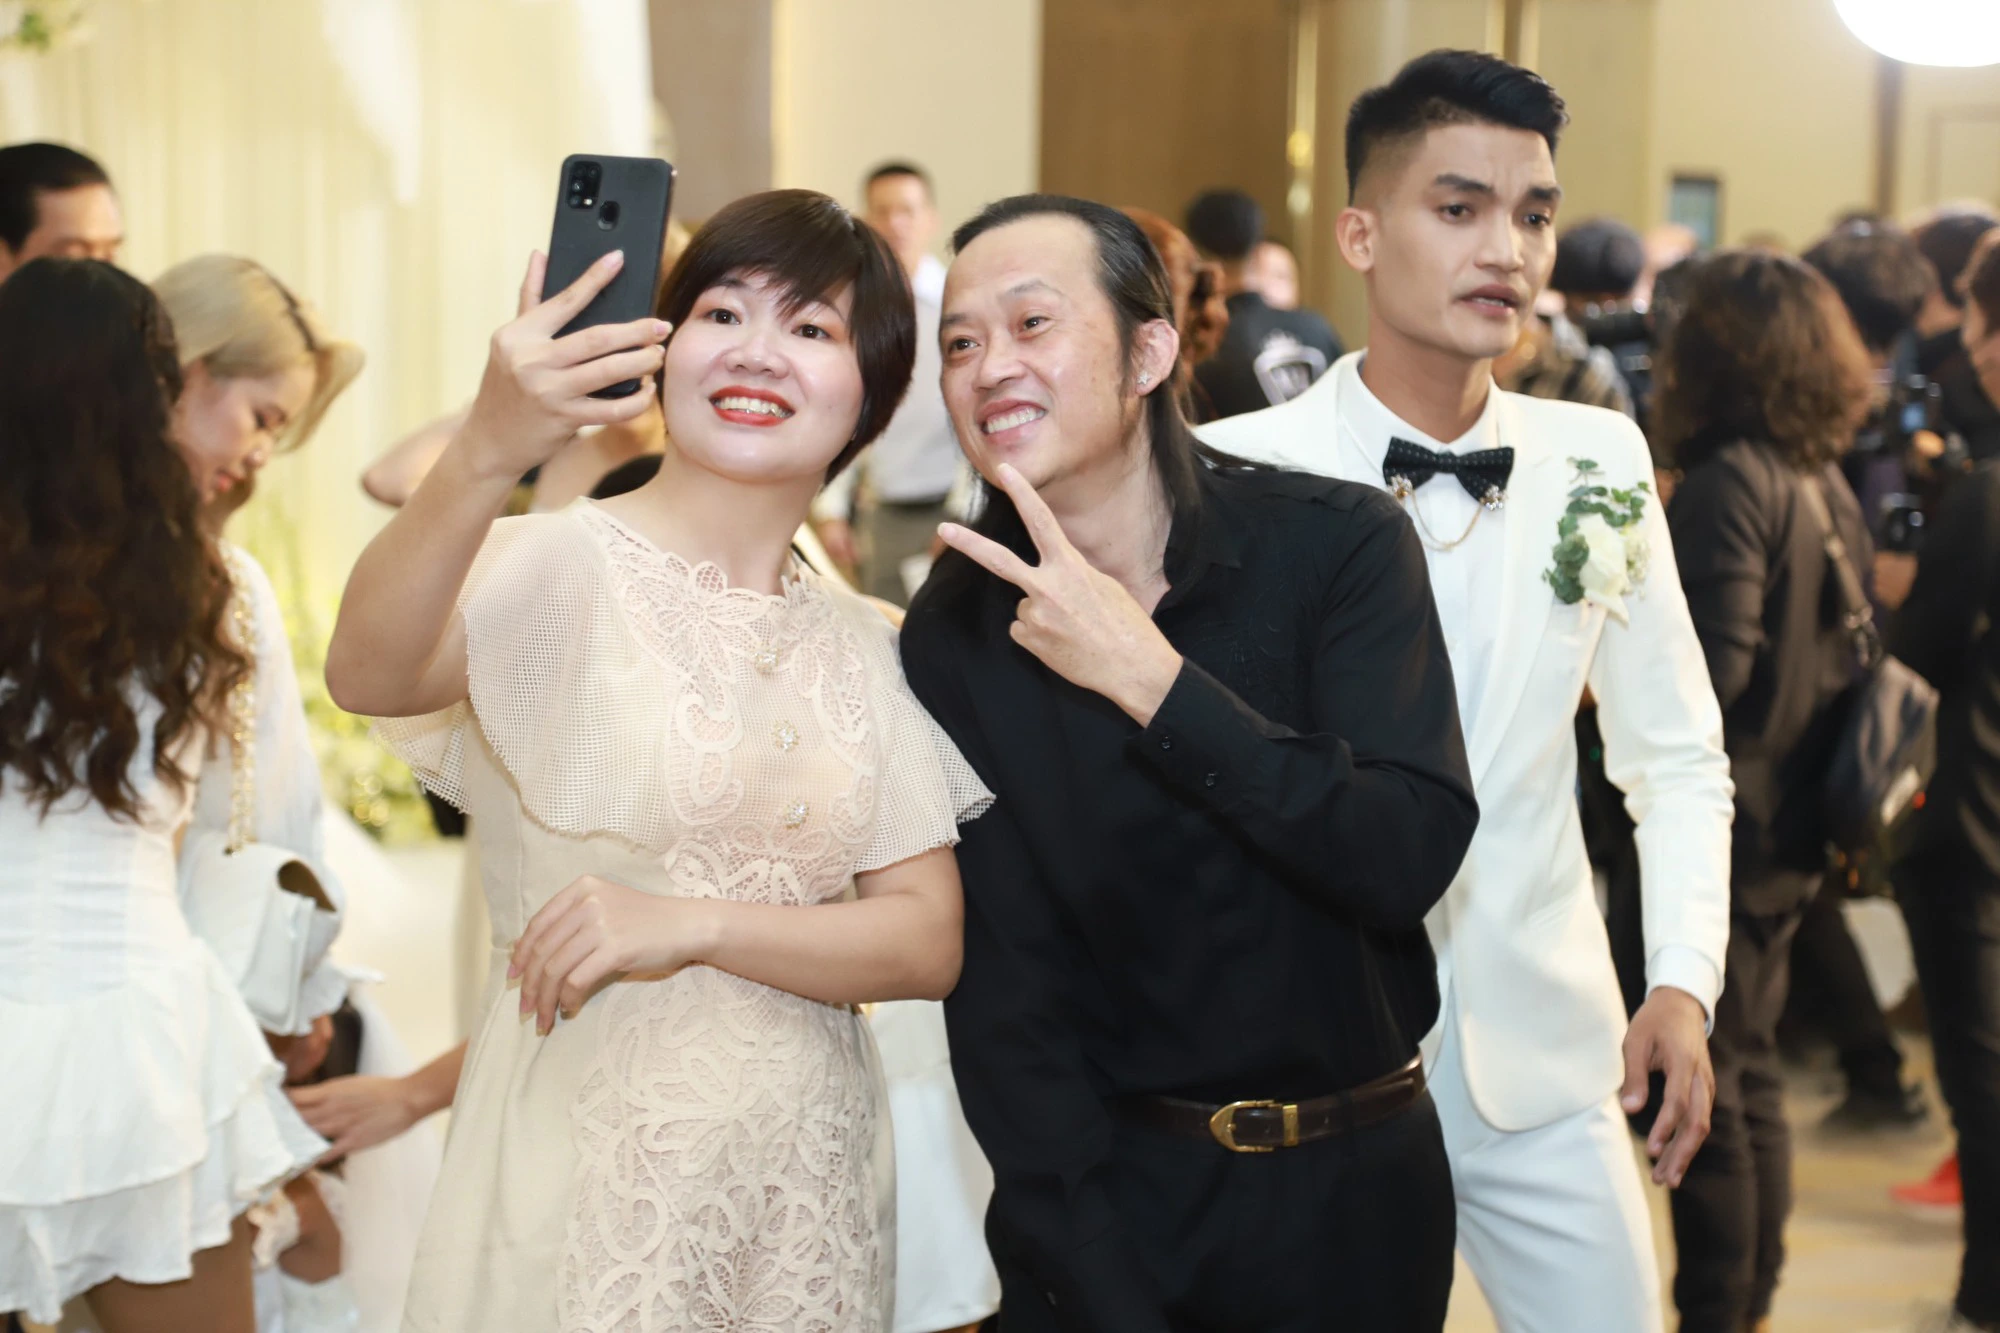 Đám cưới Mạc Văn Khoa tại TP.HCM: Hoài Linh, vợ chồng Nhã Phương - Trường Giang và dàn sao Việt tề tựu chung vui - Ảnh 13.